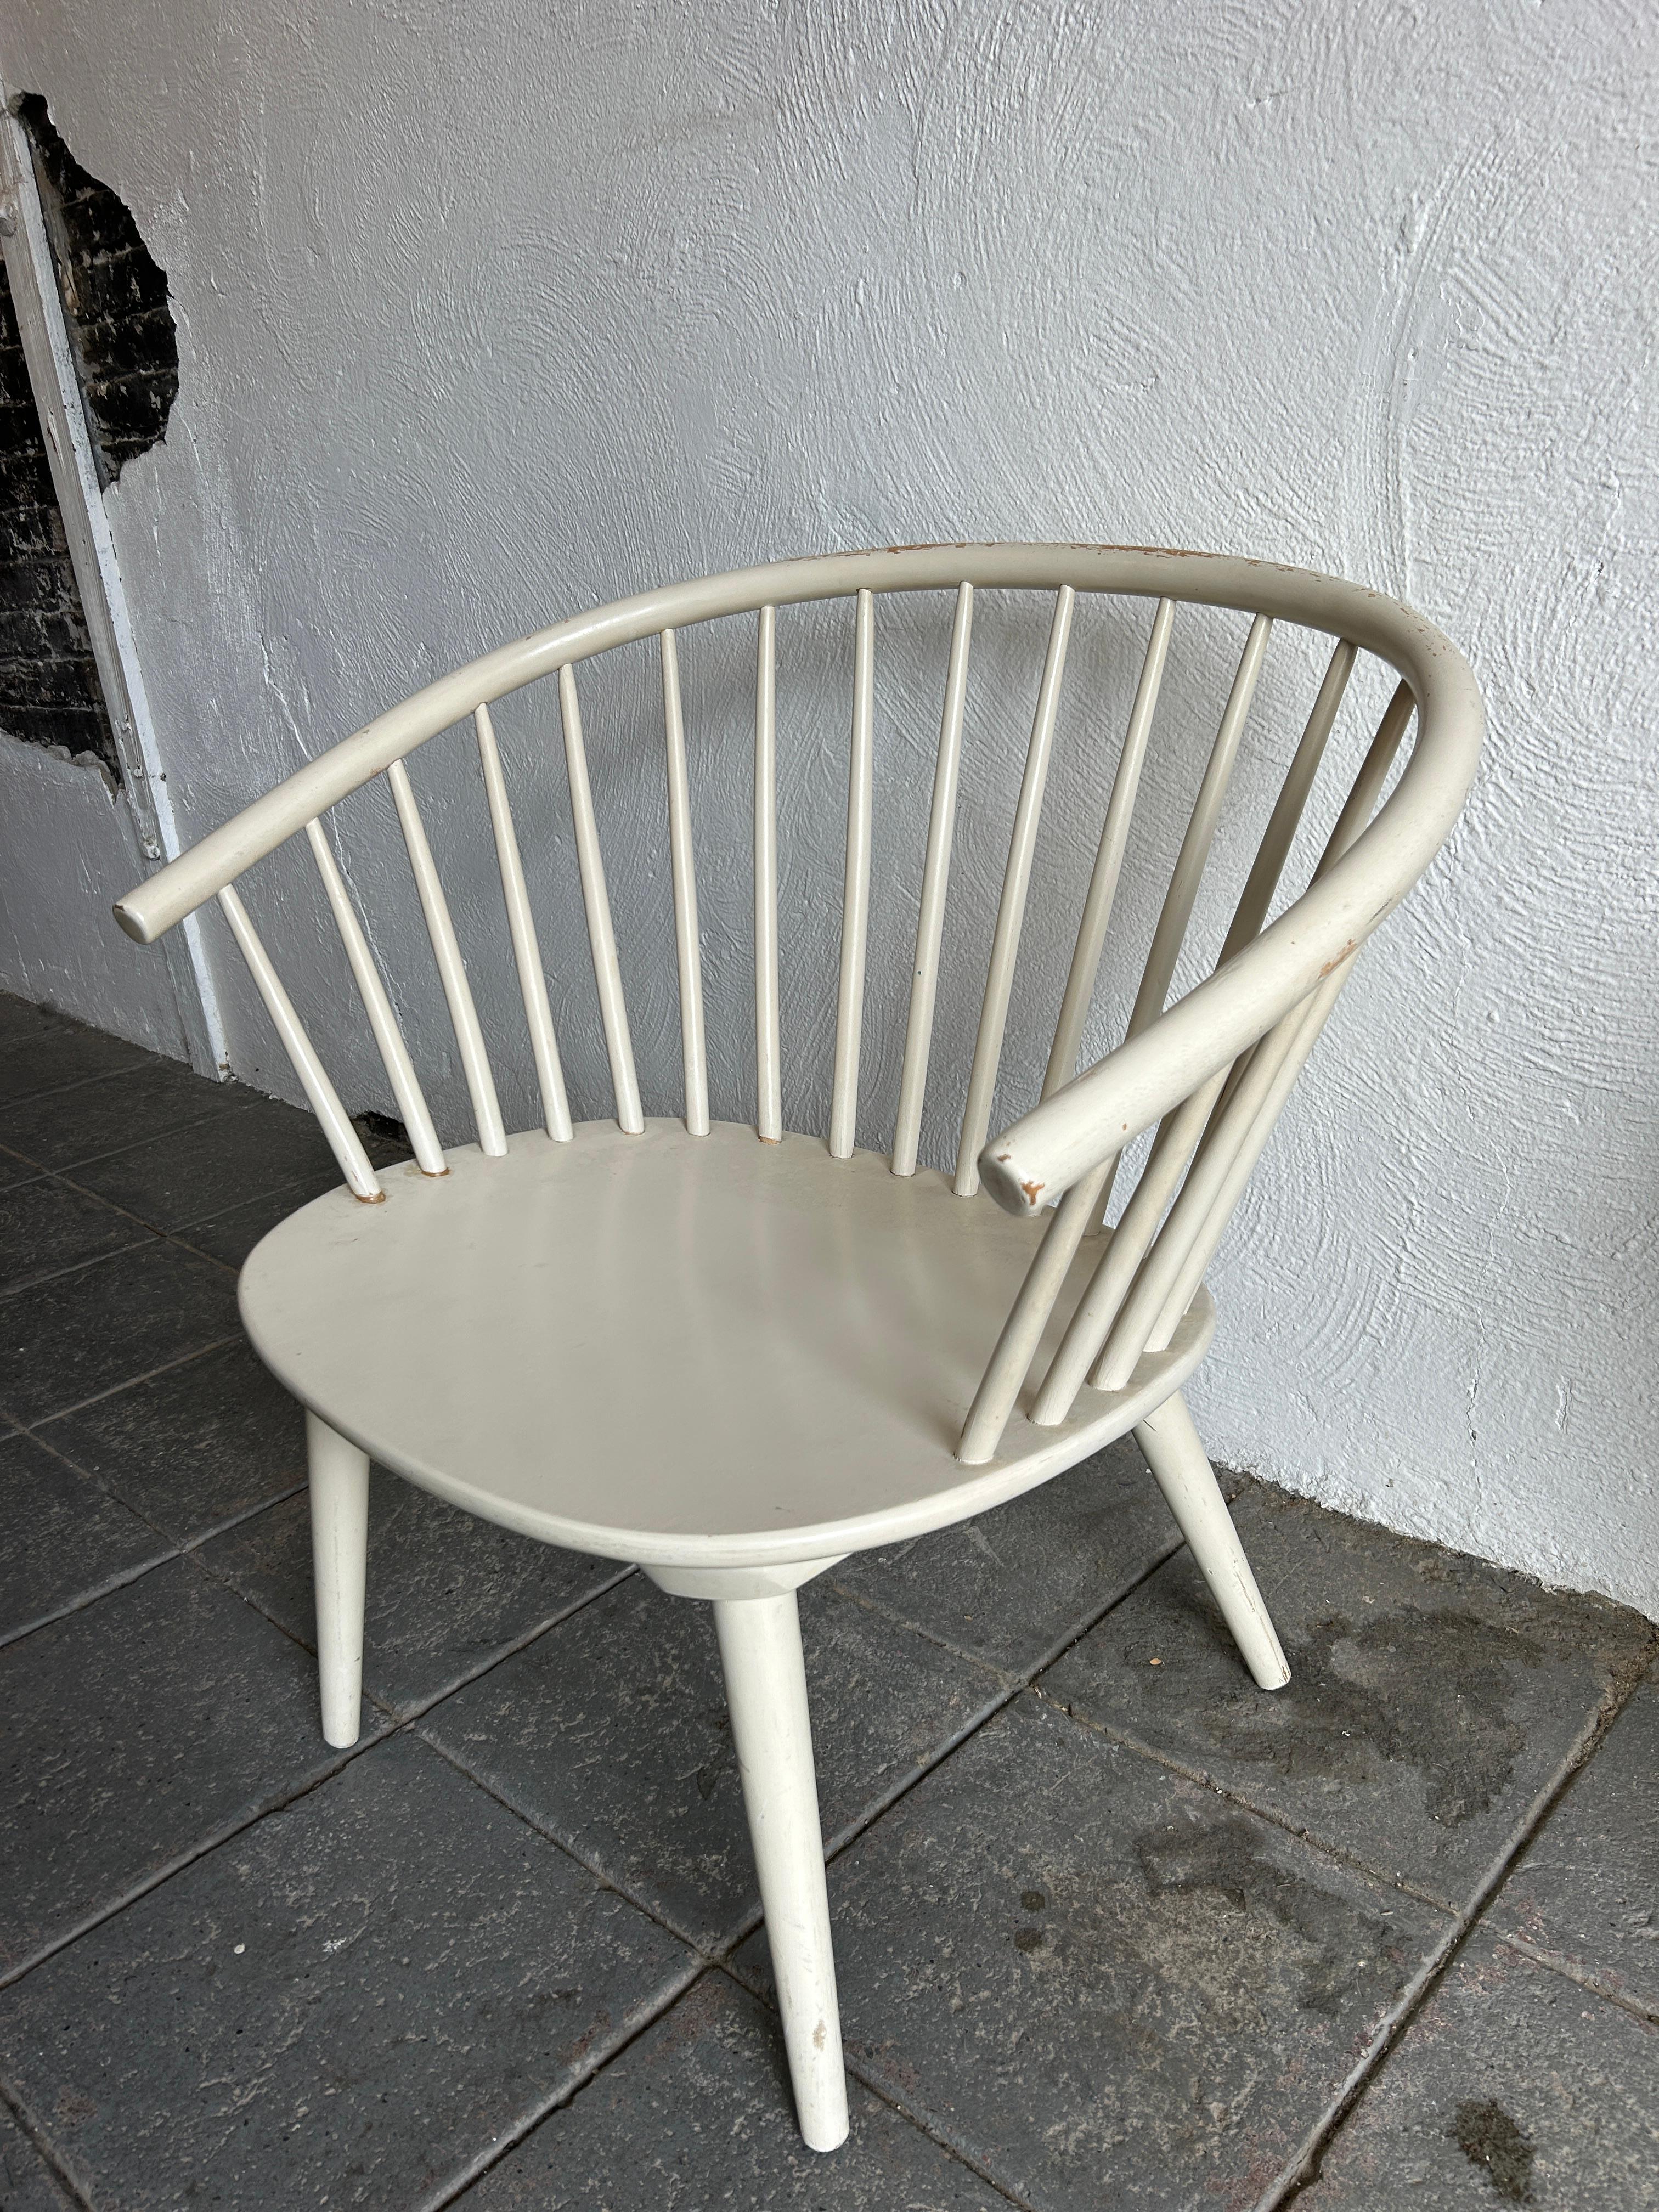 Schwedischer Sessel von Gillis Lundgren für IKEA, 1961. Original Elfenbein weiße Farbe einige Farbe fehlt auf der Oberseite der Rückseite und ein paar Kerben sonst schön von weißer Farbe. Stuhl ist sehr strukturell alle Beine abschraubbar. Sehr